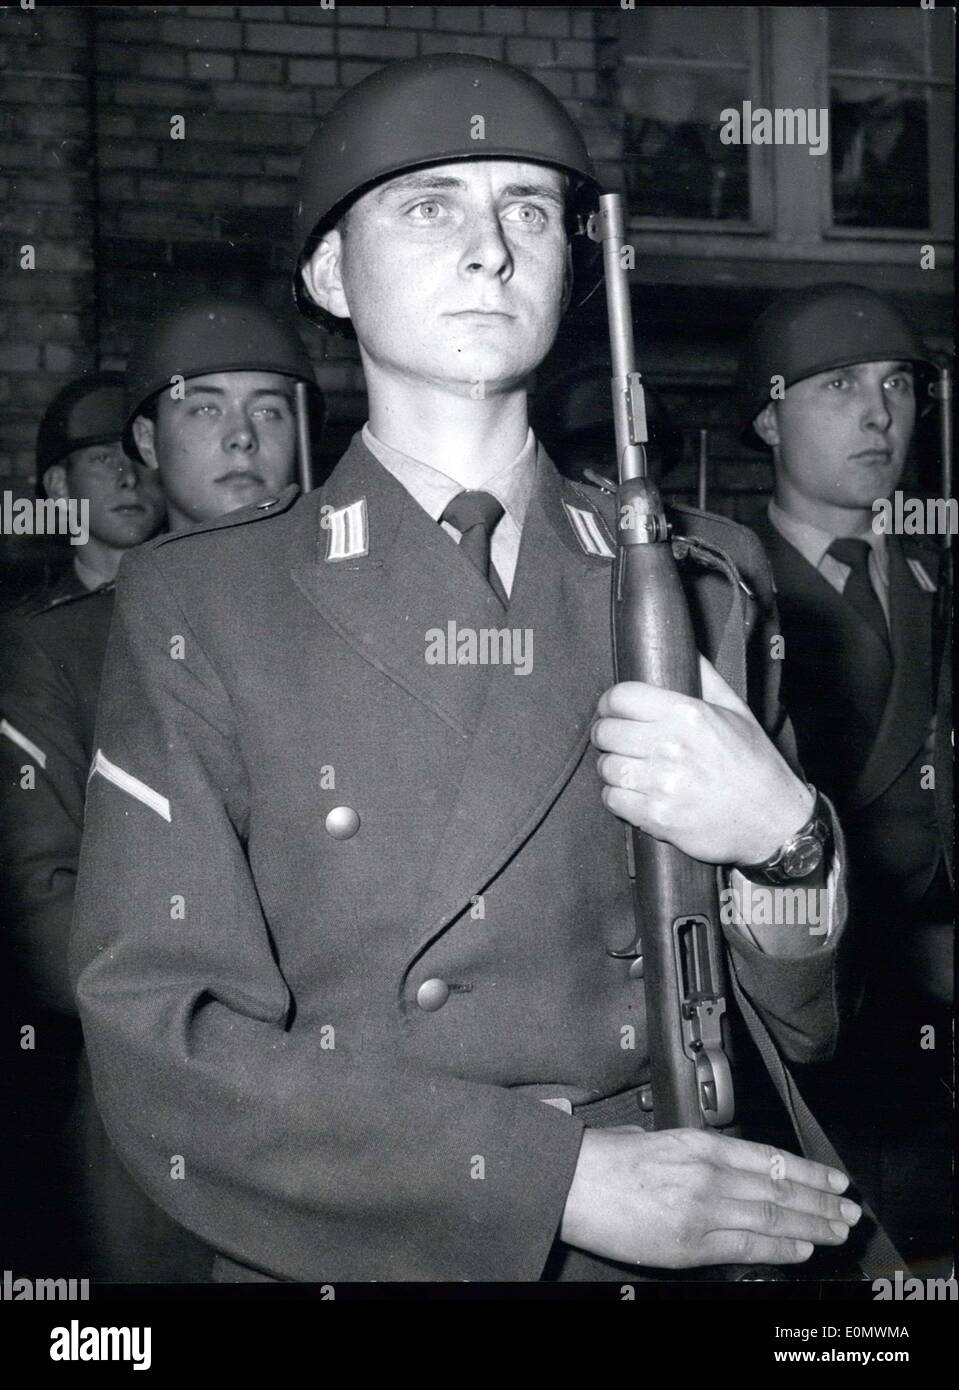 Septembre 23, 1956 - uniforme de l'Armée de terre avec des traces. L'uniforme de soldat du passé sont de retour dans ce nouveau ''TEST'' uniforme des Forces armées allemandes. Différentes unités sont à essayer les uniformes différents. Photographié ici est membre d'une unité de grenadiers dans l'un des uniformes. Banque D'Images